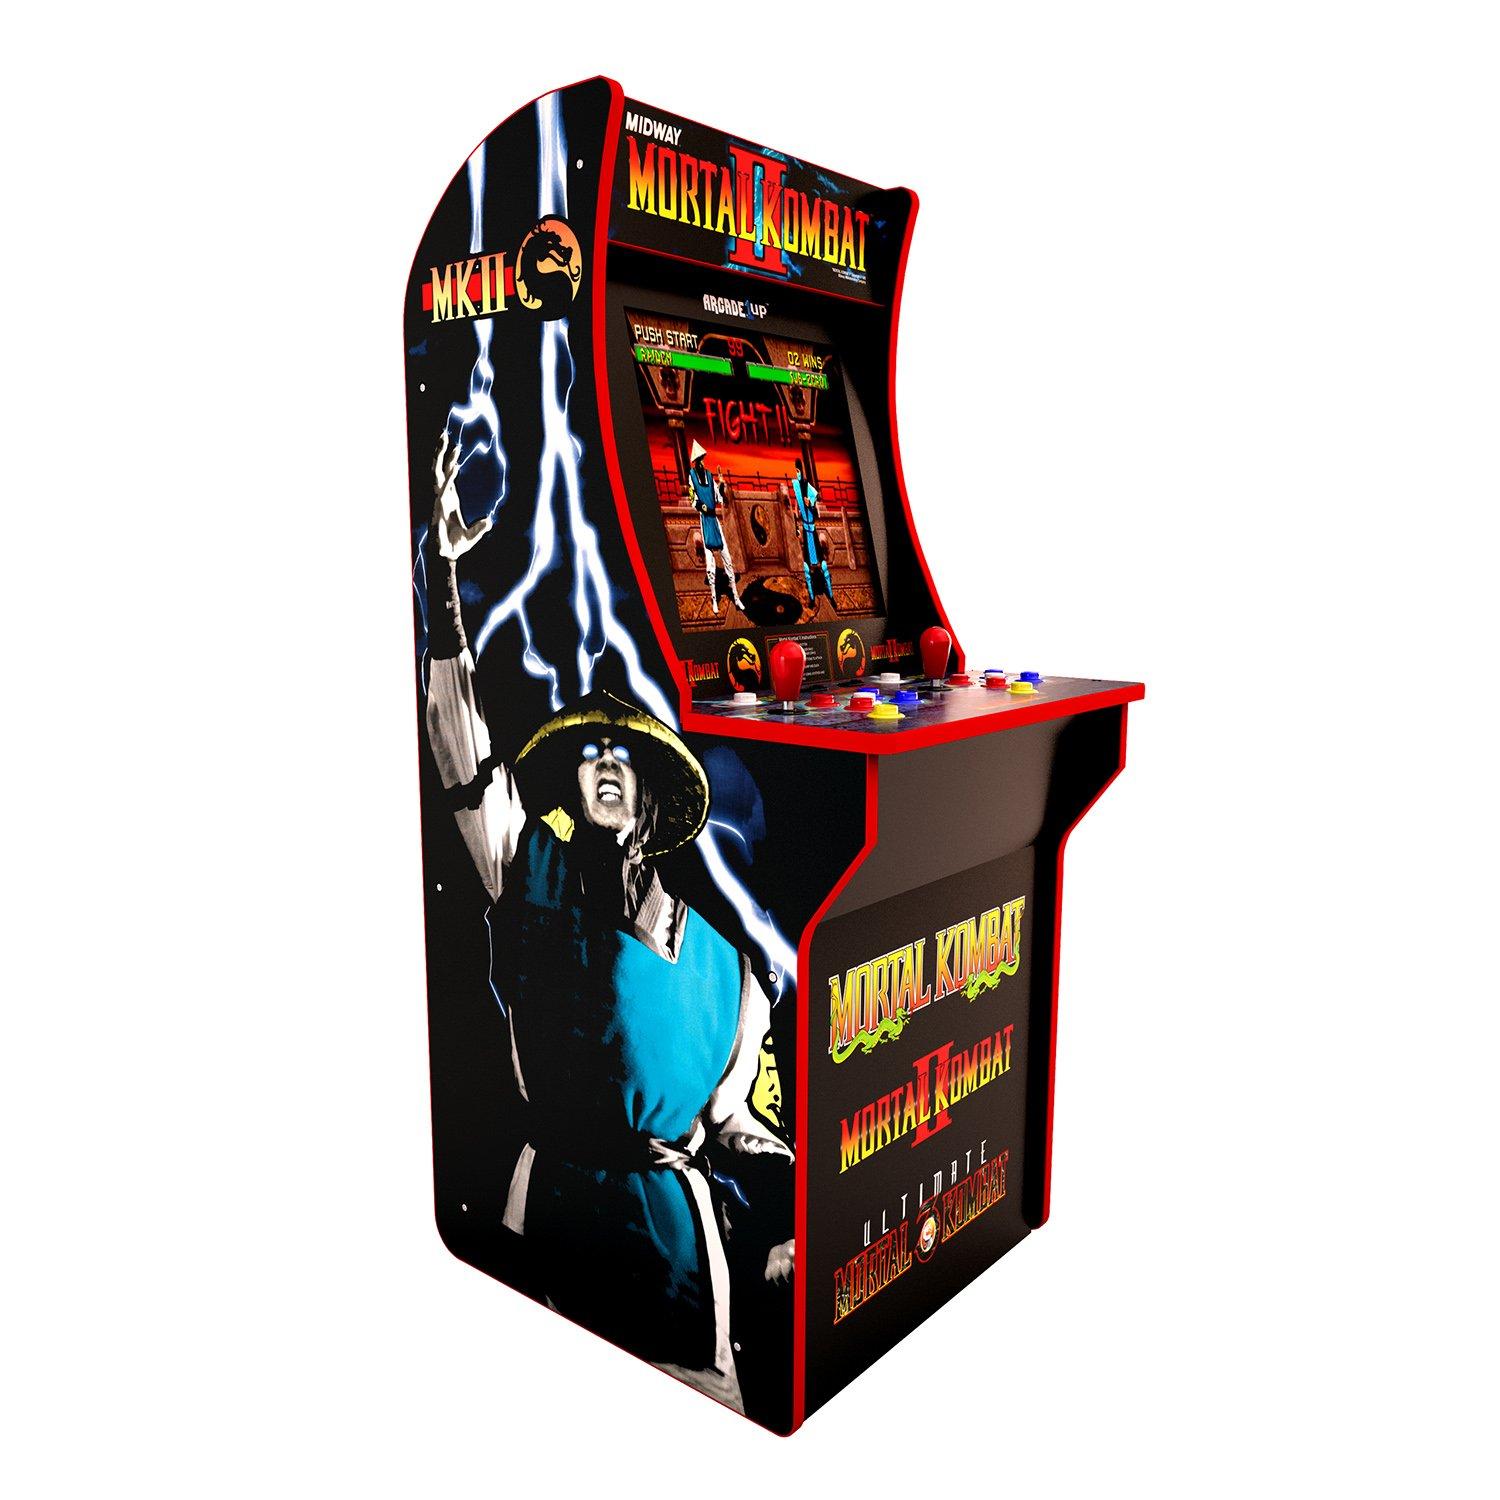 Mortal Kombat Arcade Cabinet Without Riser Vintage Software